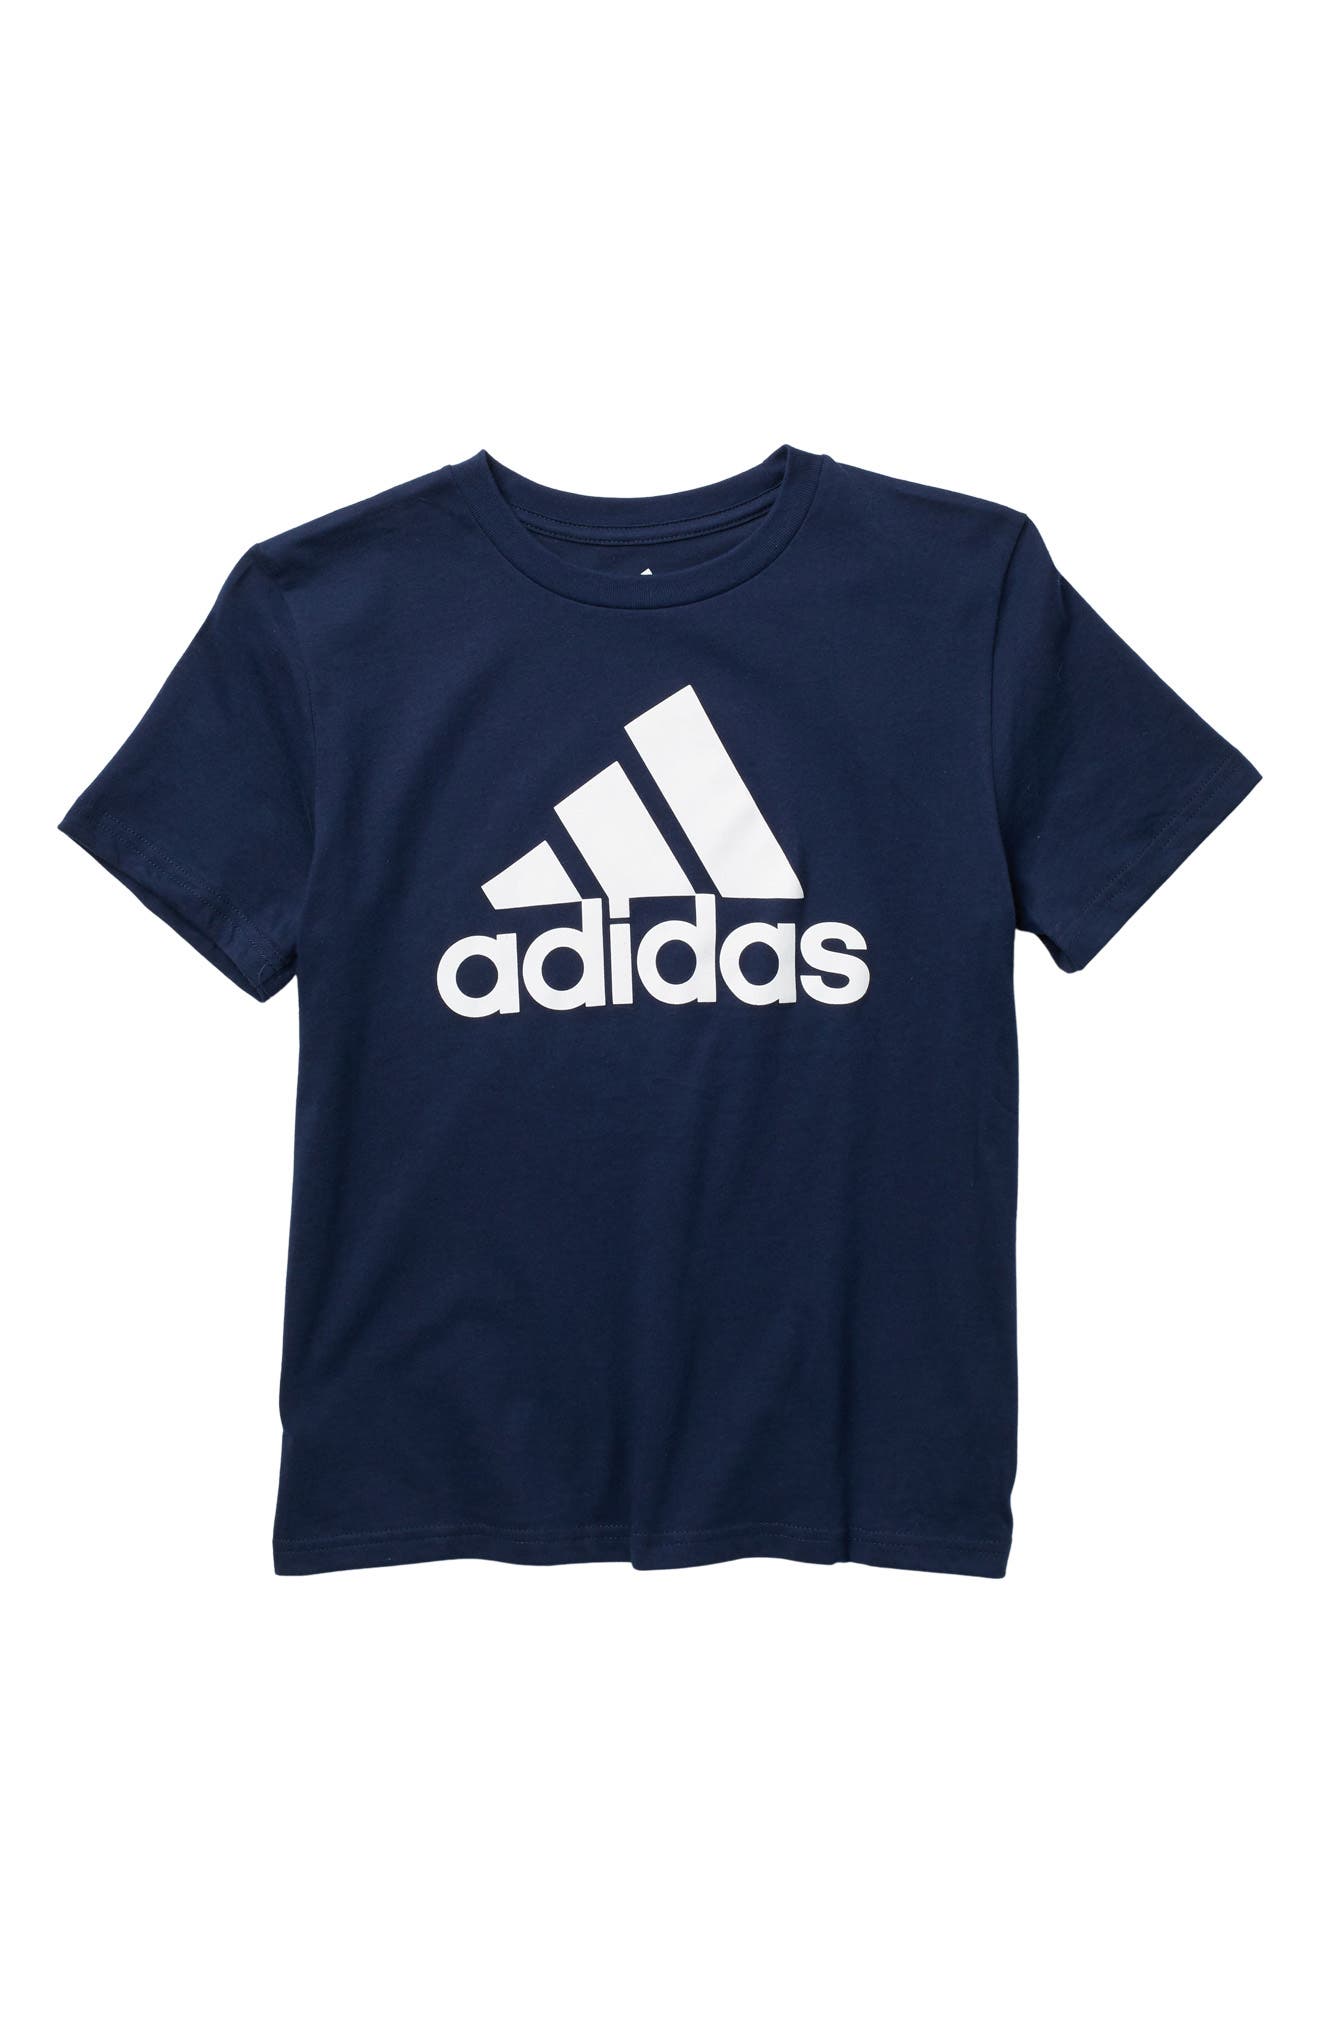 Adidas Originals Kids' Logo Cotton T-shirt In Navy